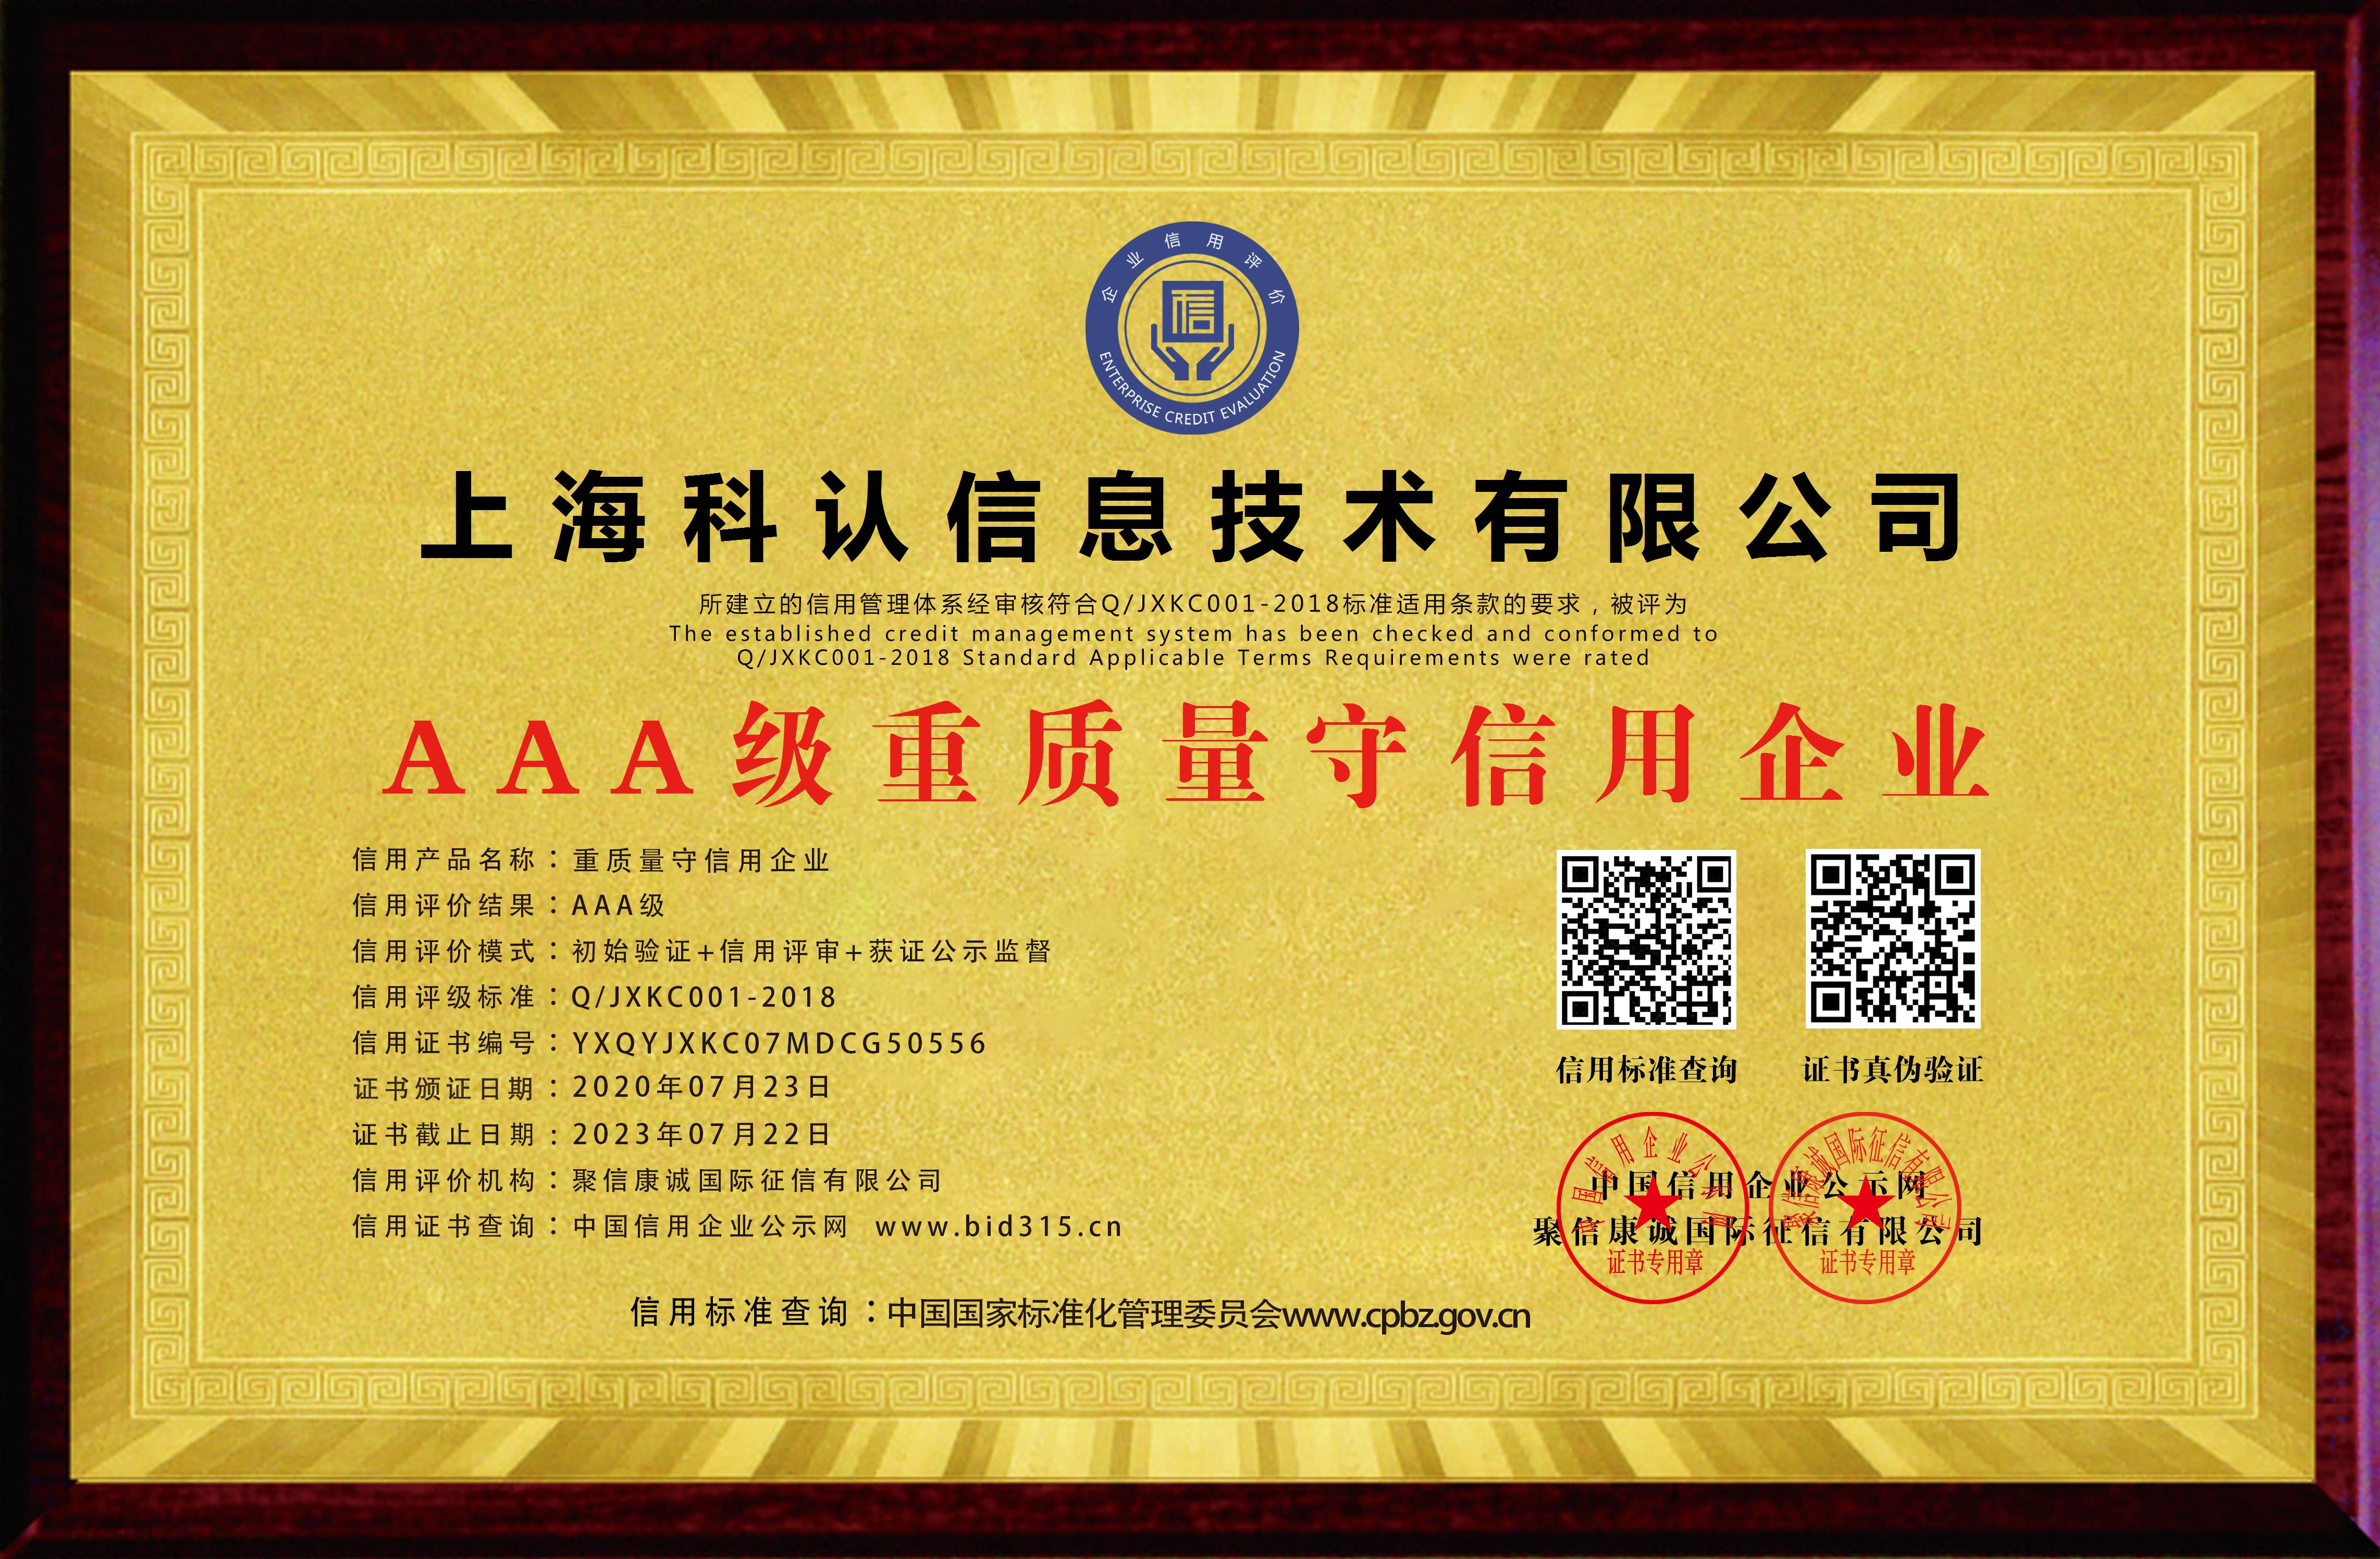 上海科认信息技术有限公司_AAA级重质量守信用企业_牌匾_电子版